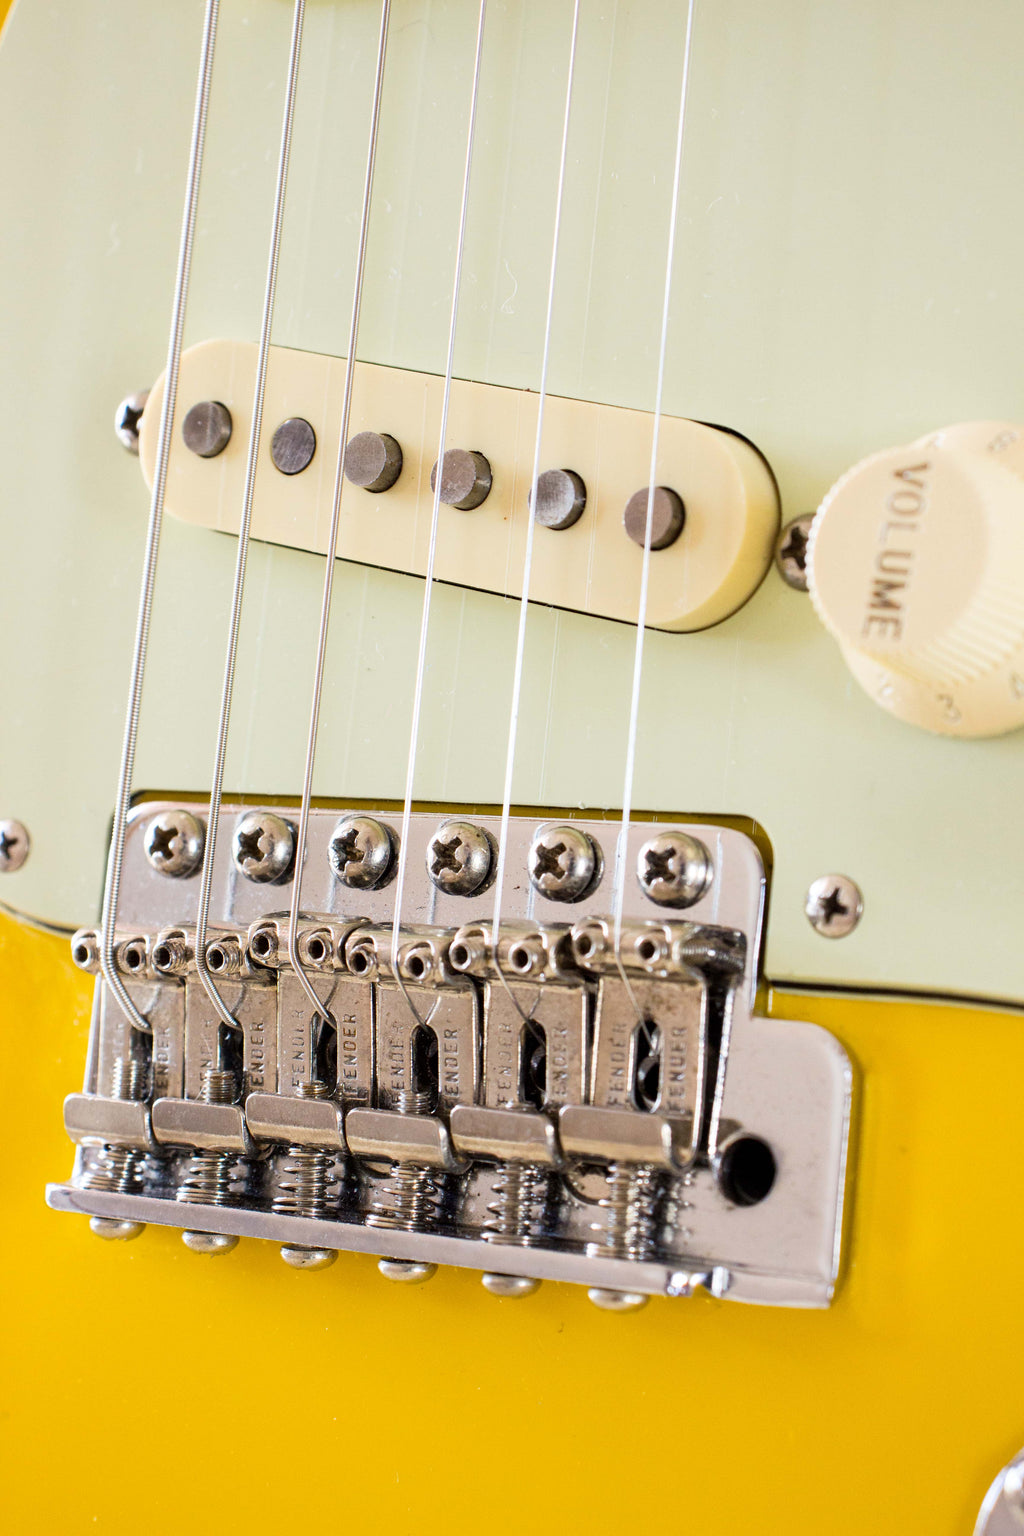 Fender Japan '62 Reissue Stratocaster ST62-70TX Rebel Yellow 1998